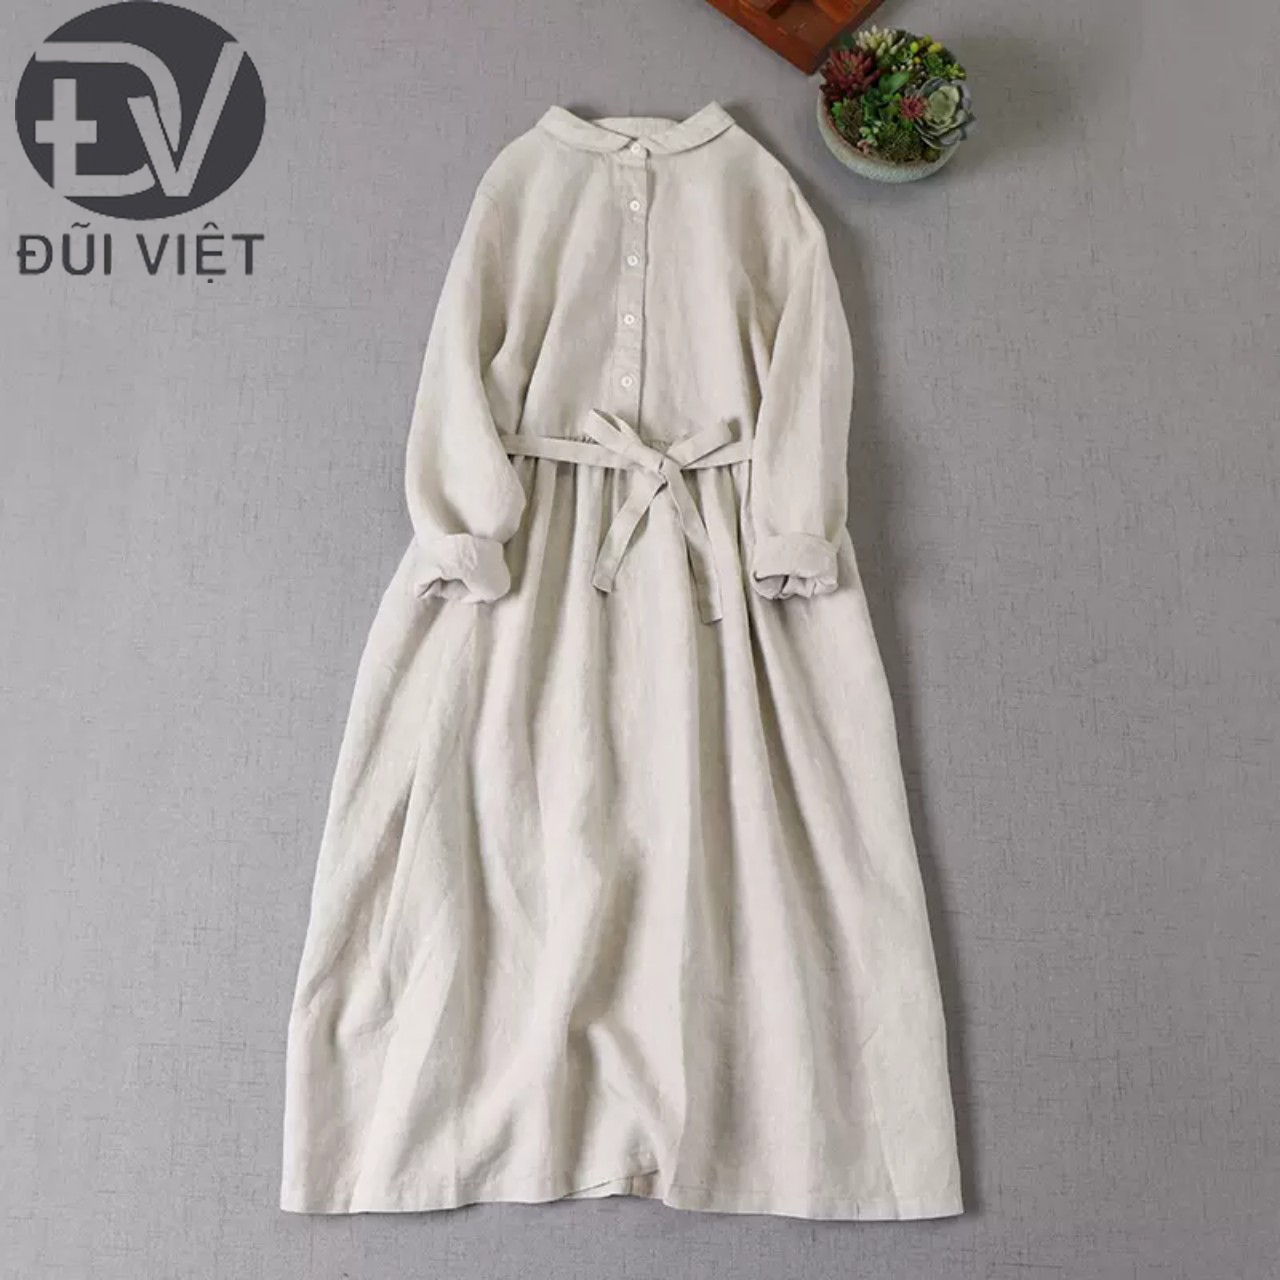 Đầm Váy Sơ Mi Nữ Đũi Việt, Váy Sơ Mi Thắt Eo Tay Dài Hàn Quốc Phong Cách Vintage